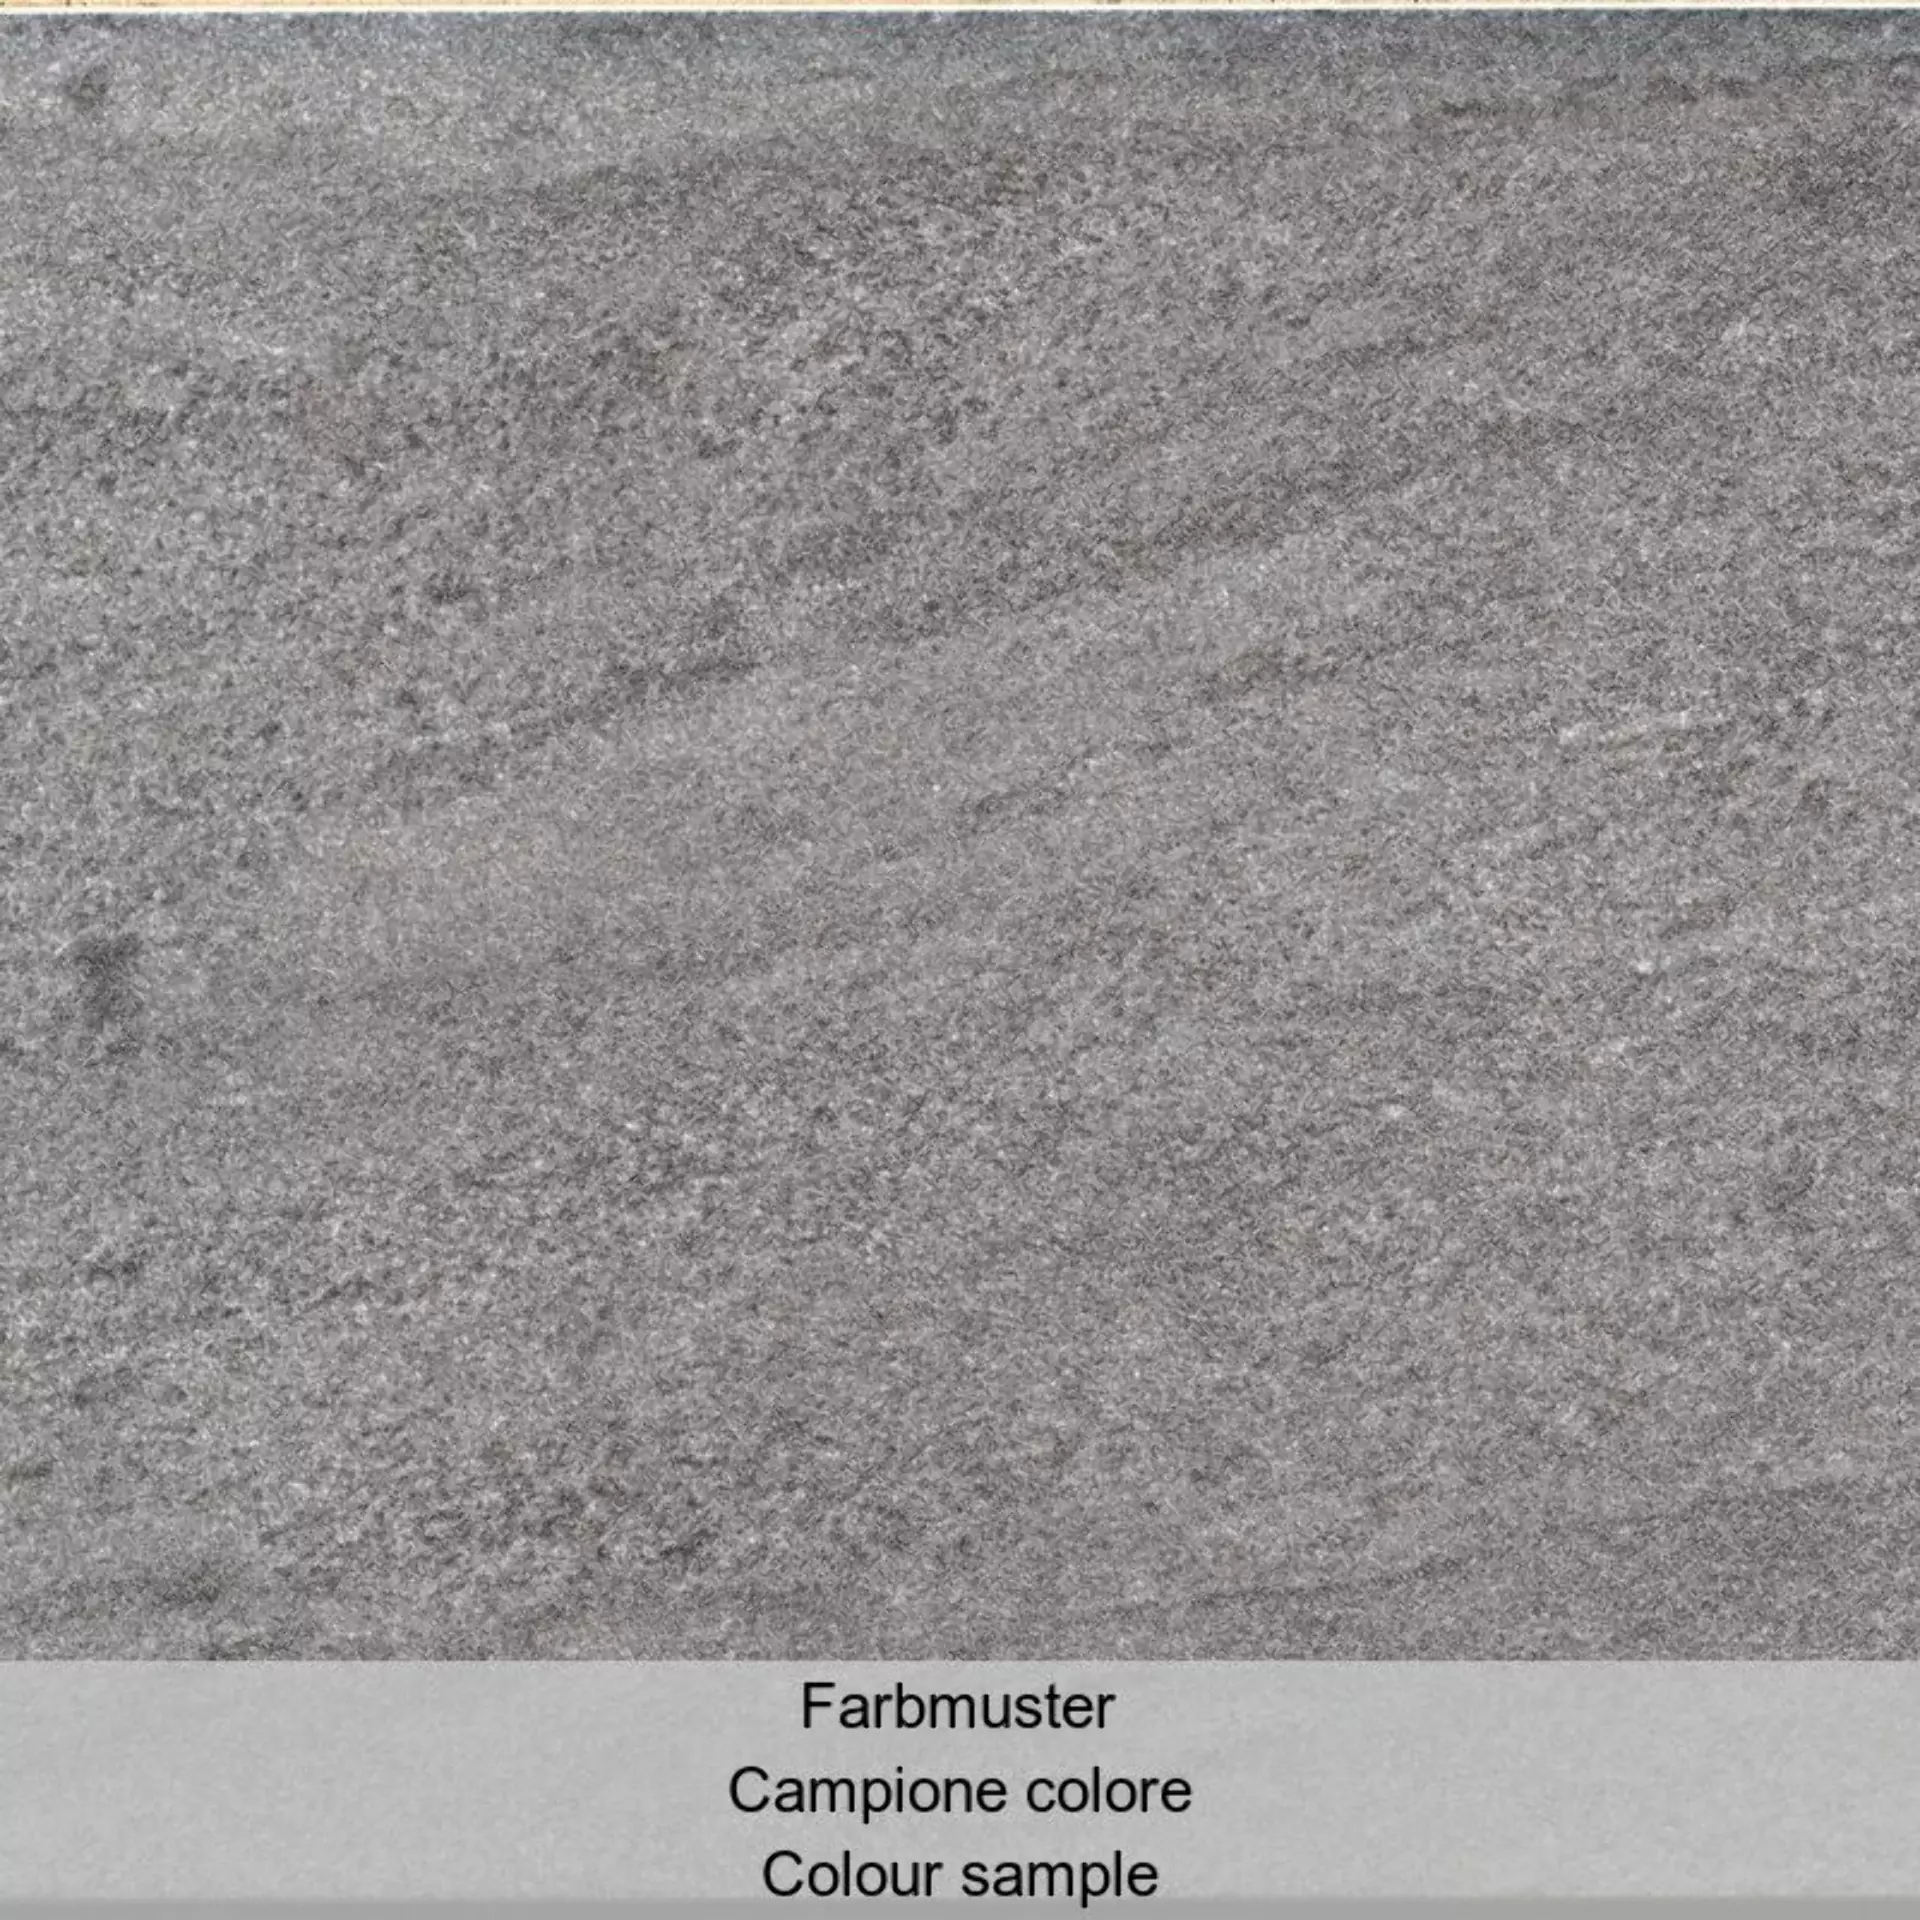 Casalgrande Terre Toscane Greve Naturale – Matt – Antibacterial 4955736 60x60cm rectified 10mm